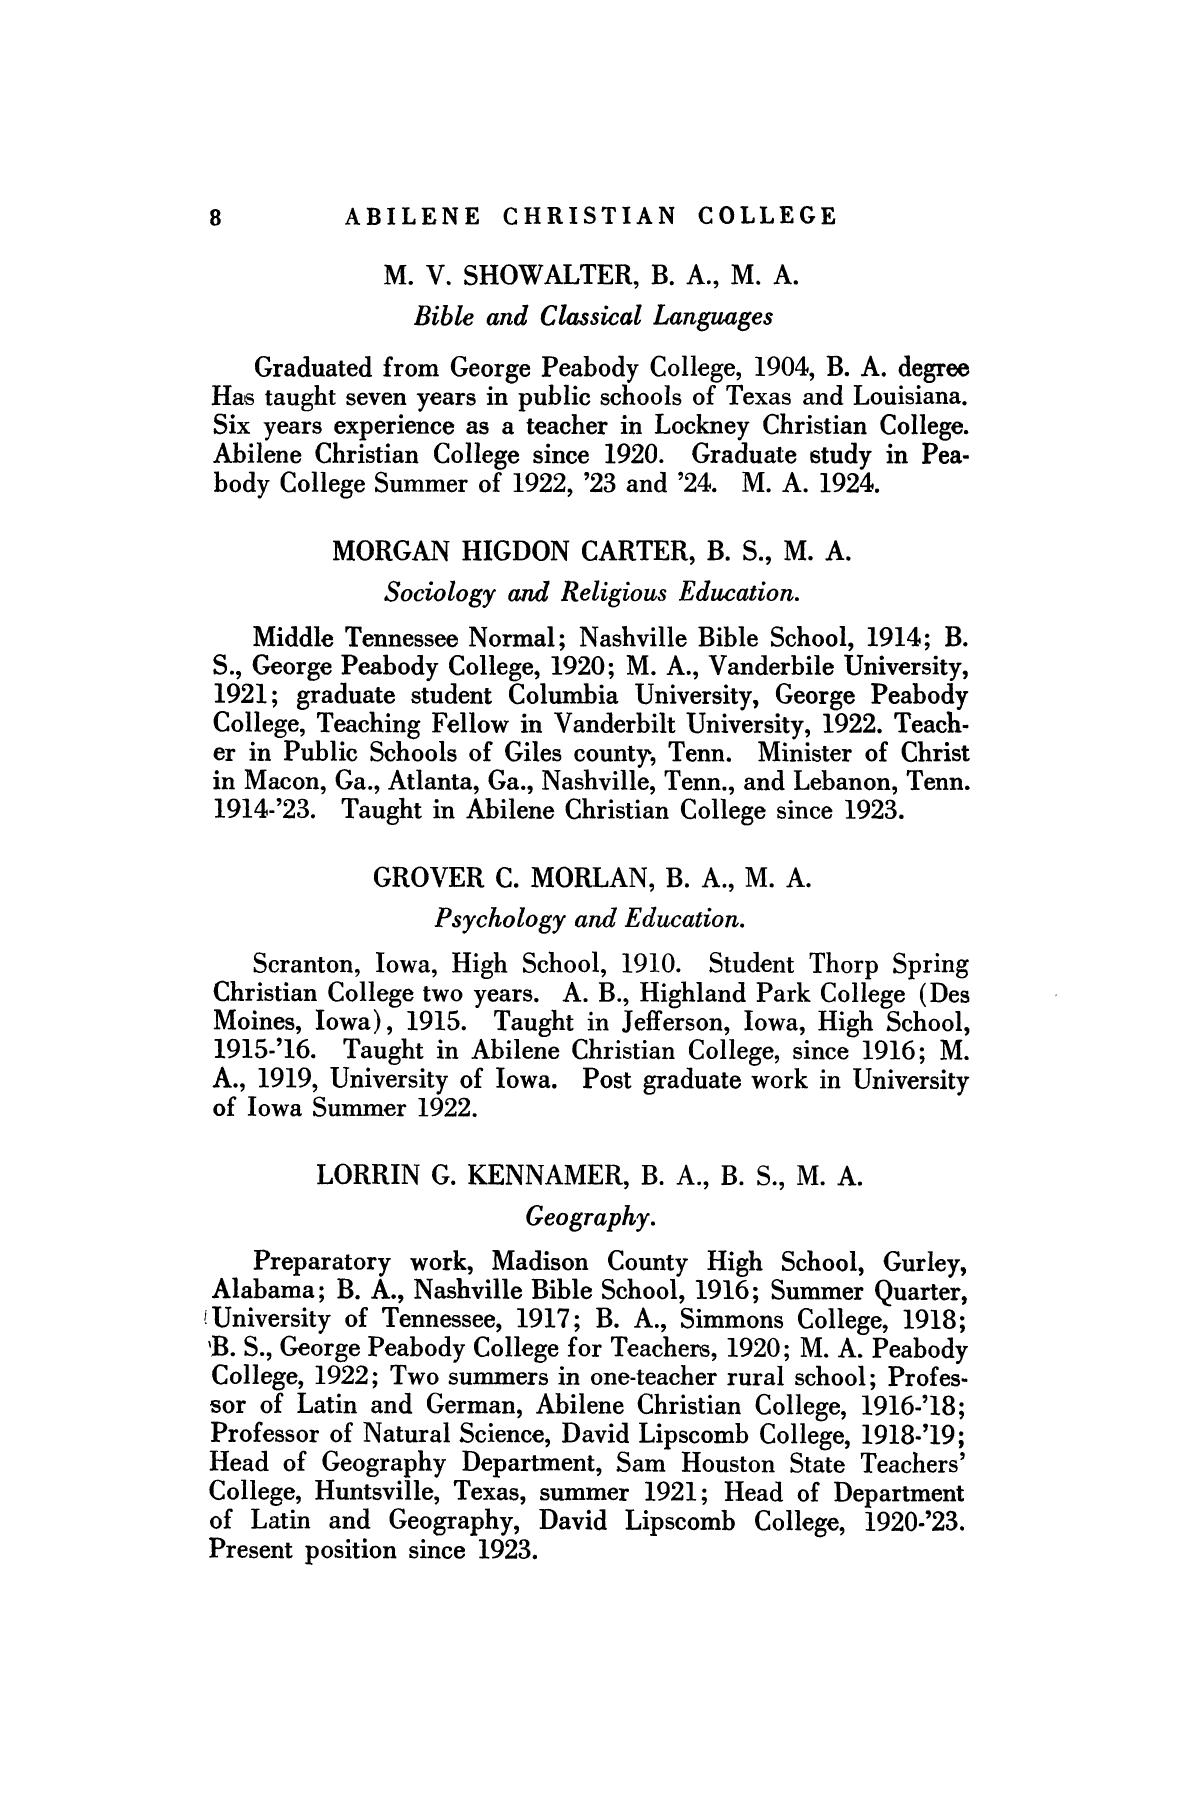 Catalog of Abilene Christian College, 1925-1926
                                                
                                                    8
                                                